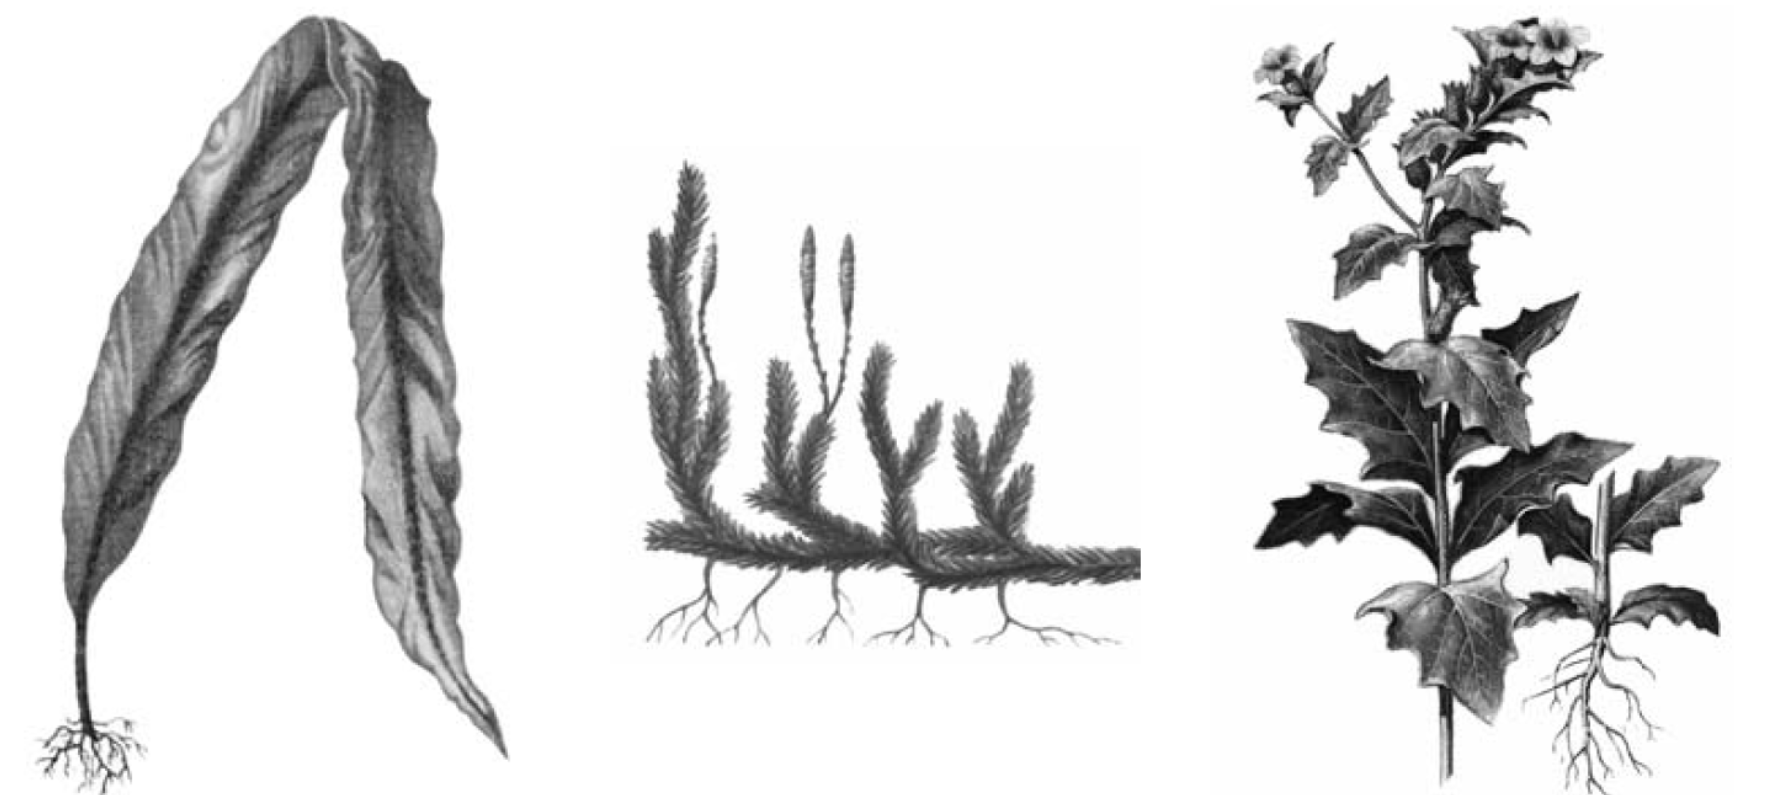 Рассмотрите изображения кукушкин лен ламинария баклажан. Плаун ВПР. Биологический рисунок растения. Ламинария булавовидная. Ламинария рисунок.